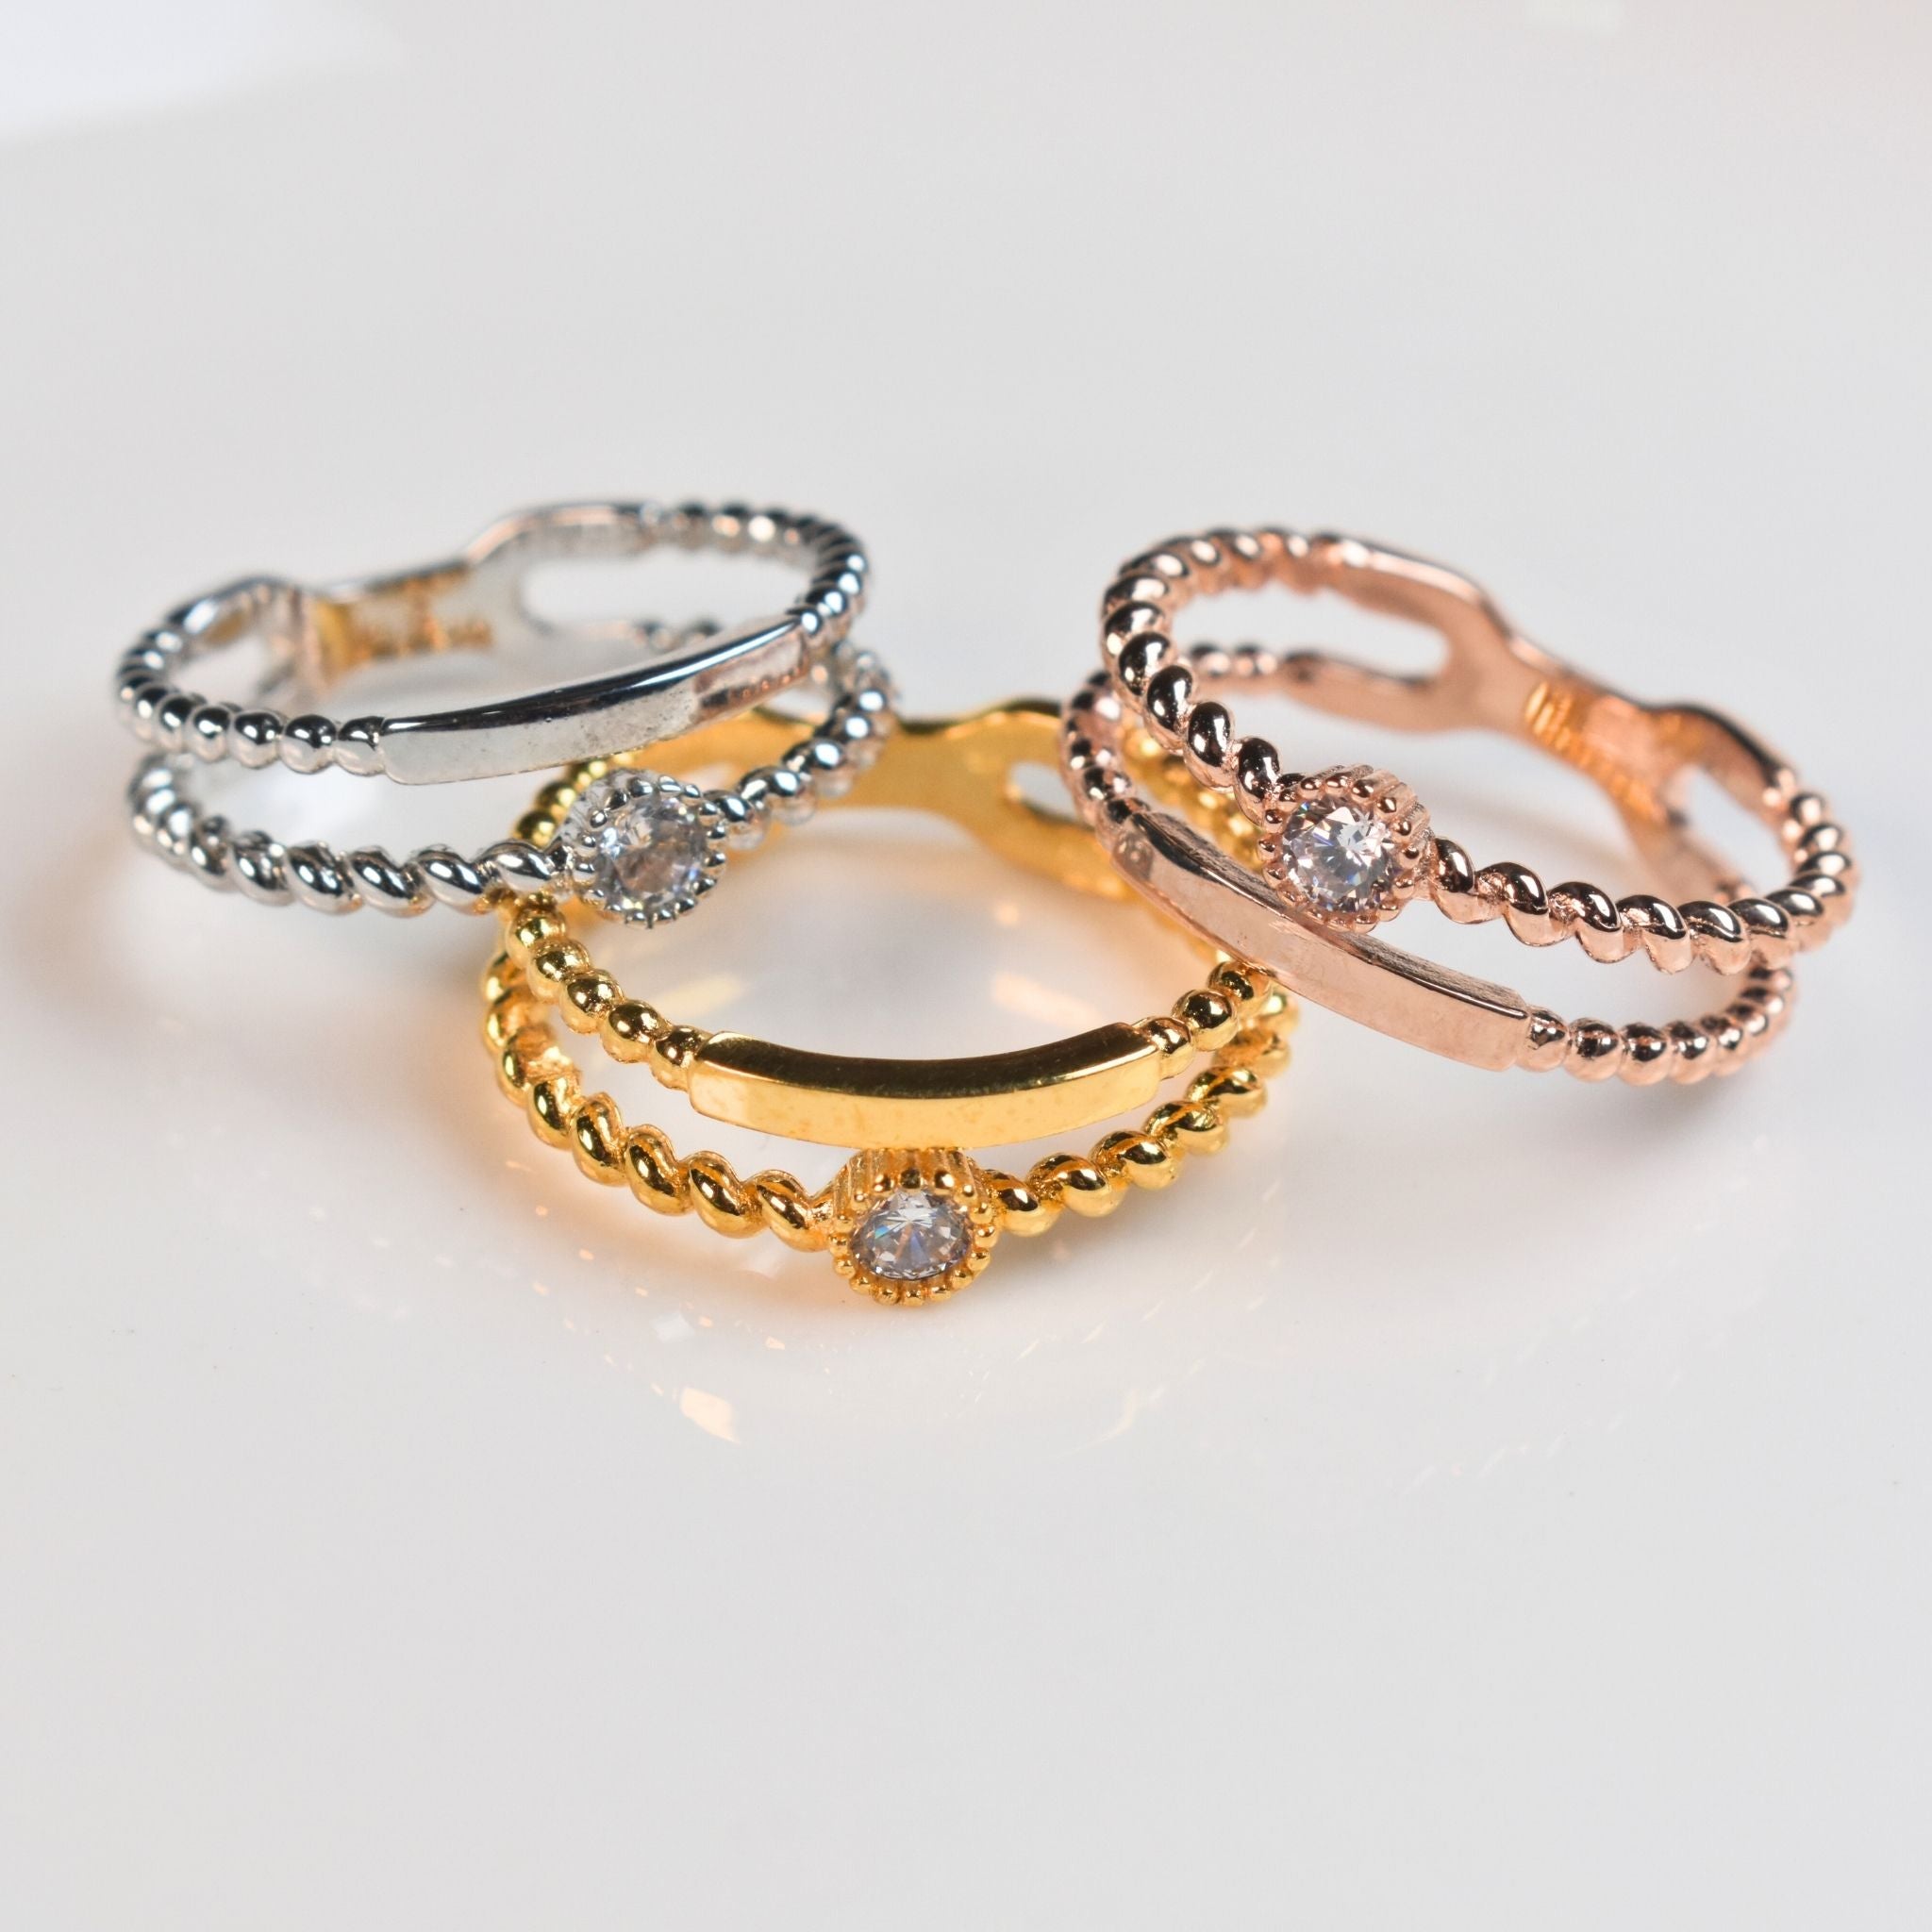 Pearls of Korea Celestial Splendor Ring